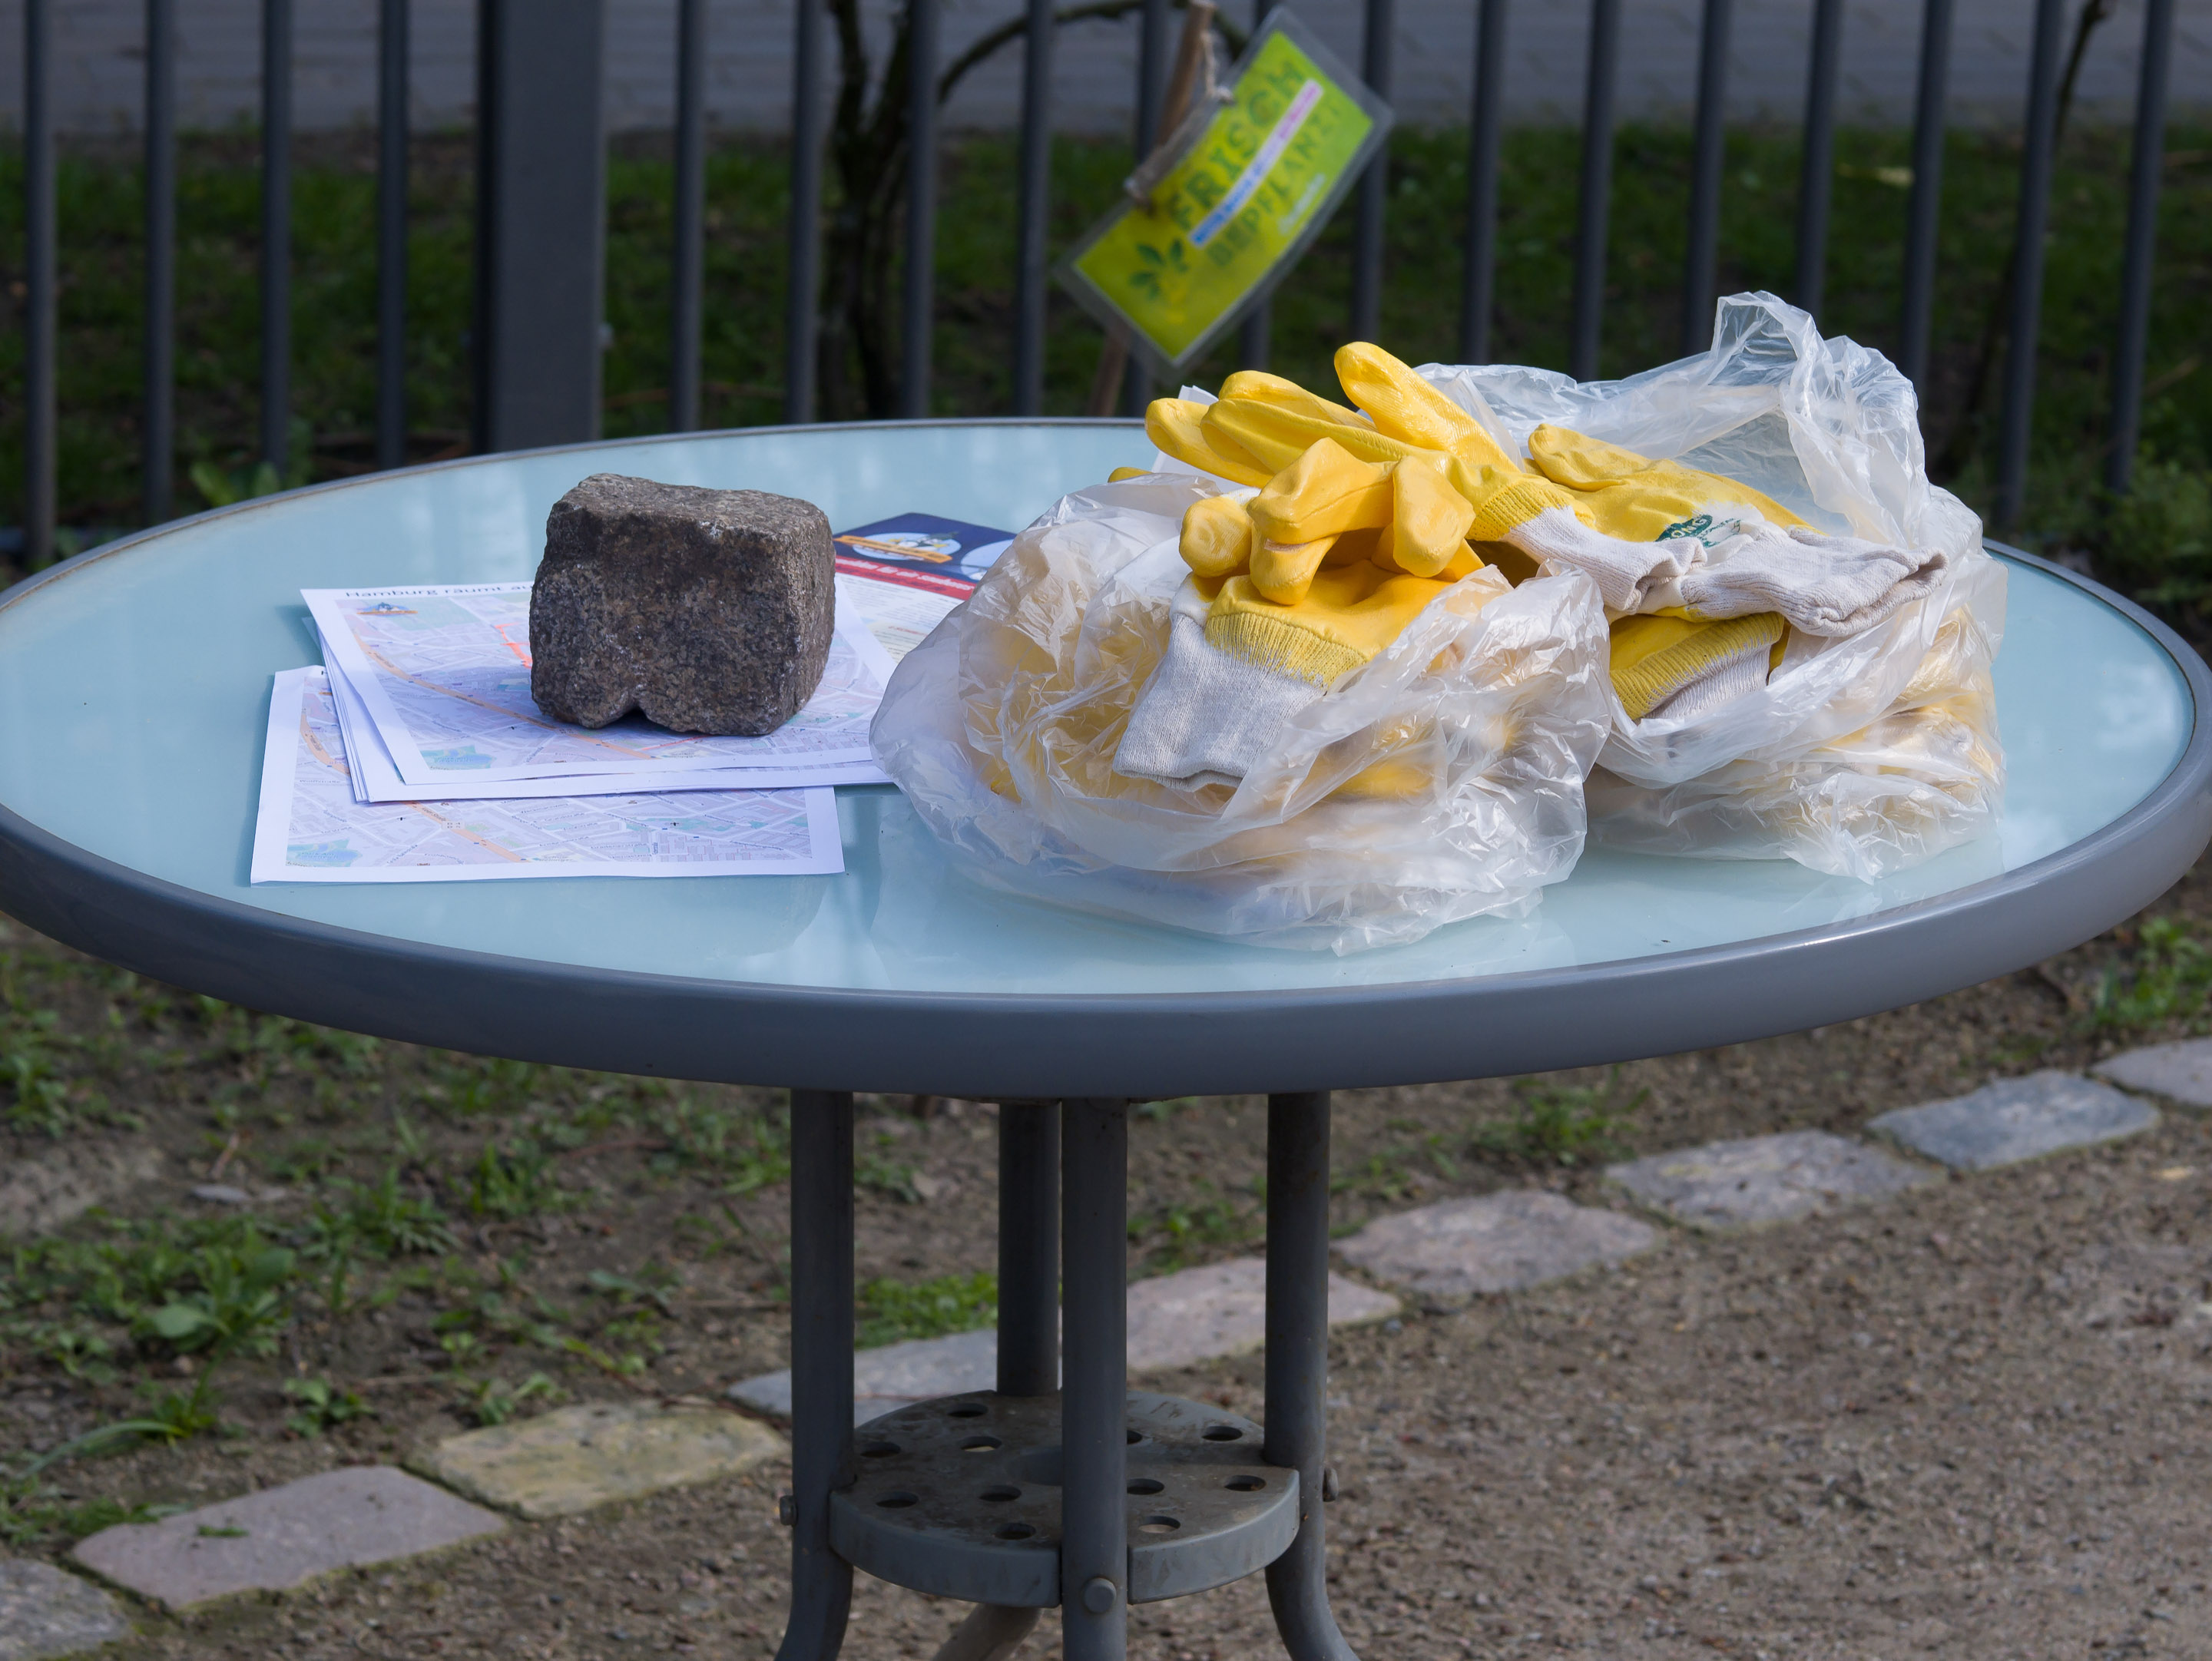 Standtpläne, Infomaterial und gelbe Gummihandschuhe auf einem runden Tisch